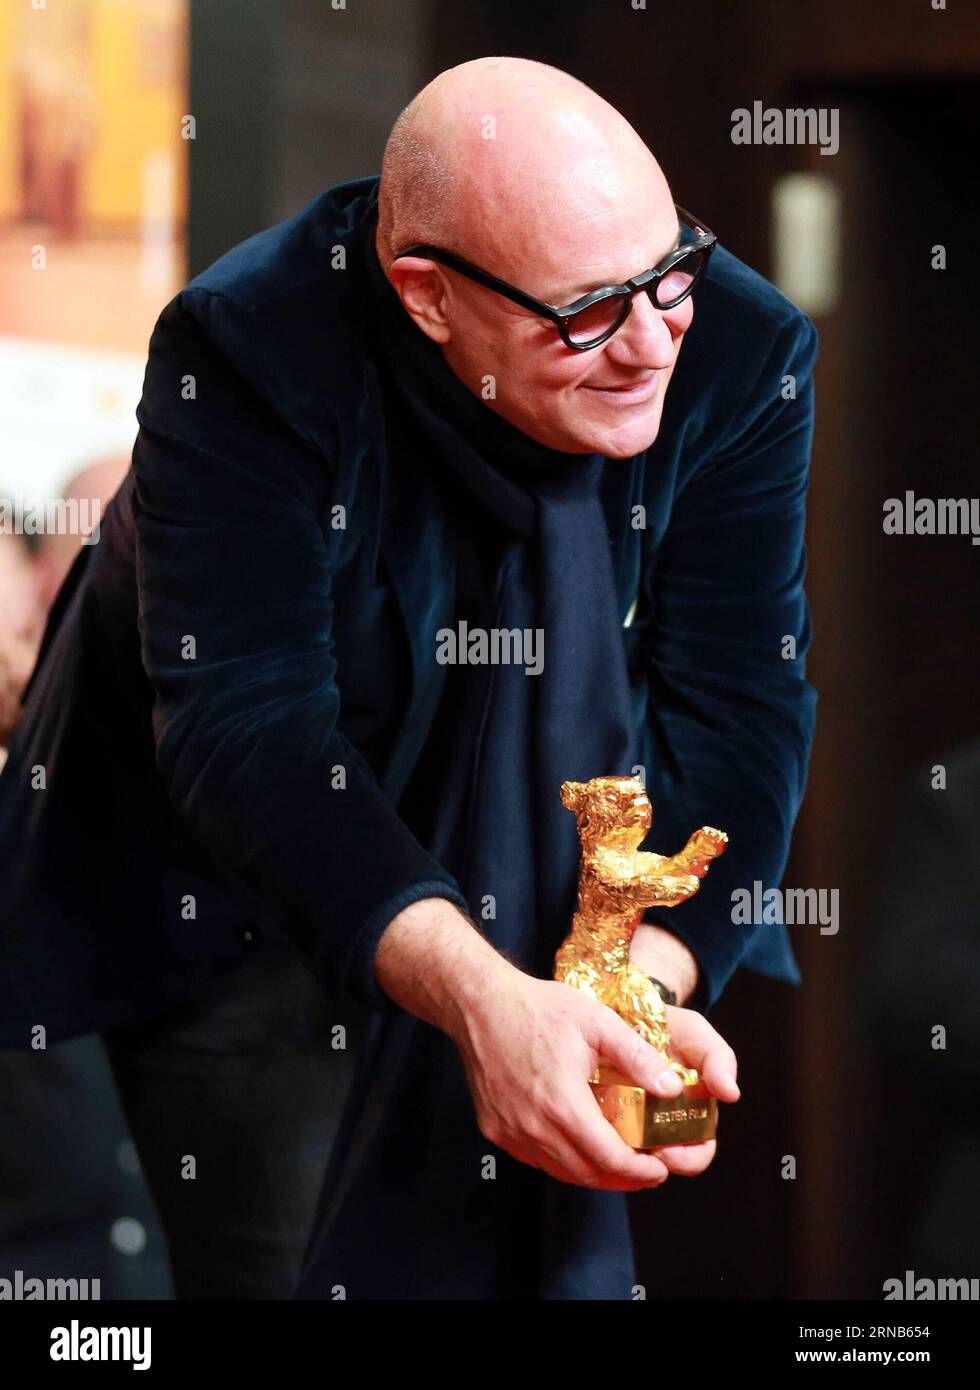 (160220) -- BERLÍN, 20 de febrero de 2016 -- El director italiano Gianfranco Rosi asiste a una conferencia de prensa con el trofeo de Oso de Oro a la Mejor Película después de la ceremonia de entrega de premios del 66º Festival Internacional de Cine de Berlinale en Berlín, Alemania, el 20 de febrero de 2016. El documental italiano Fire at Sea ganó el Oso de Oro, el máximo premio del jurado otorgado a la mejor película, en el 66º Festival Internacional de Cine de Berlín el sábado. ALEMANIA-BERLÍN-BERLINALE FESTIVAL INTERNACIONAL DE CINE-PREMIOS-OSO DE ORO-GIANFRANCO ROSI LuoxHuanhuan PUBLICATIONxNOTxINxCHN BERLIN FEB 20 2016 Director italiano Gian Fran Foto de stock